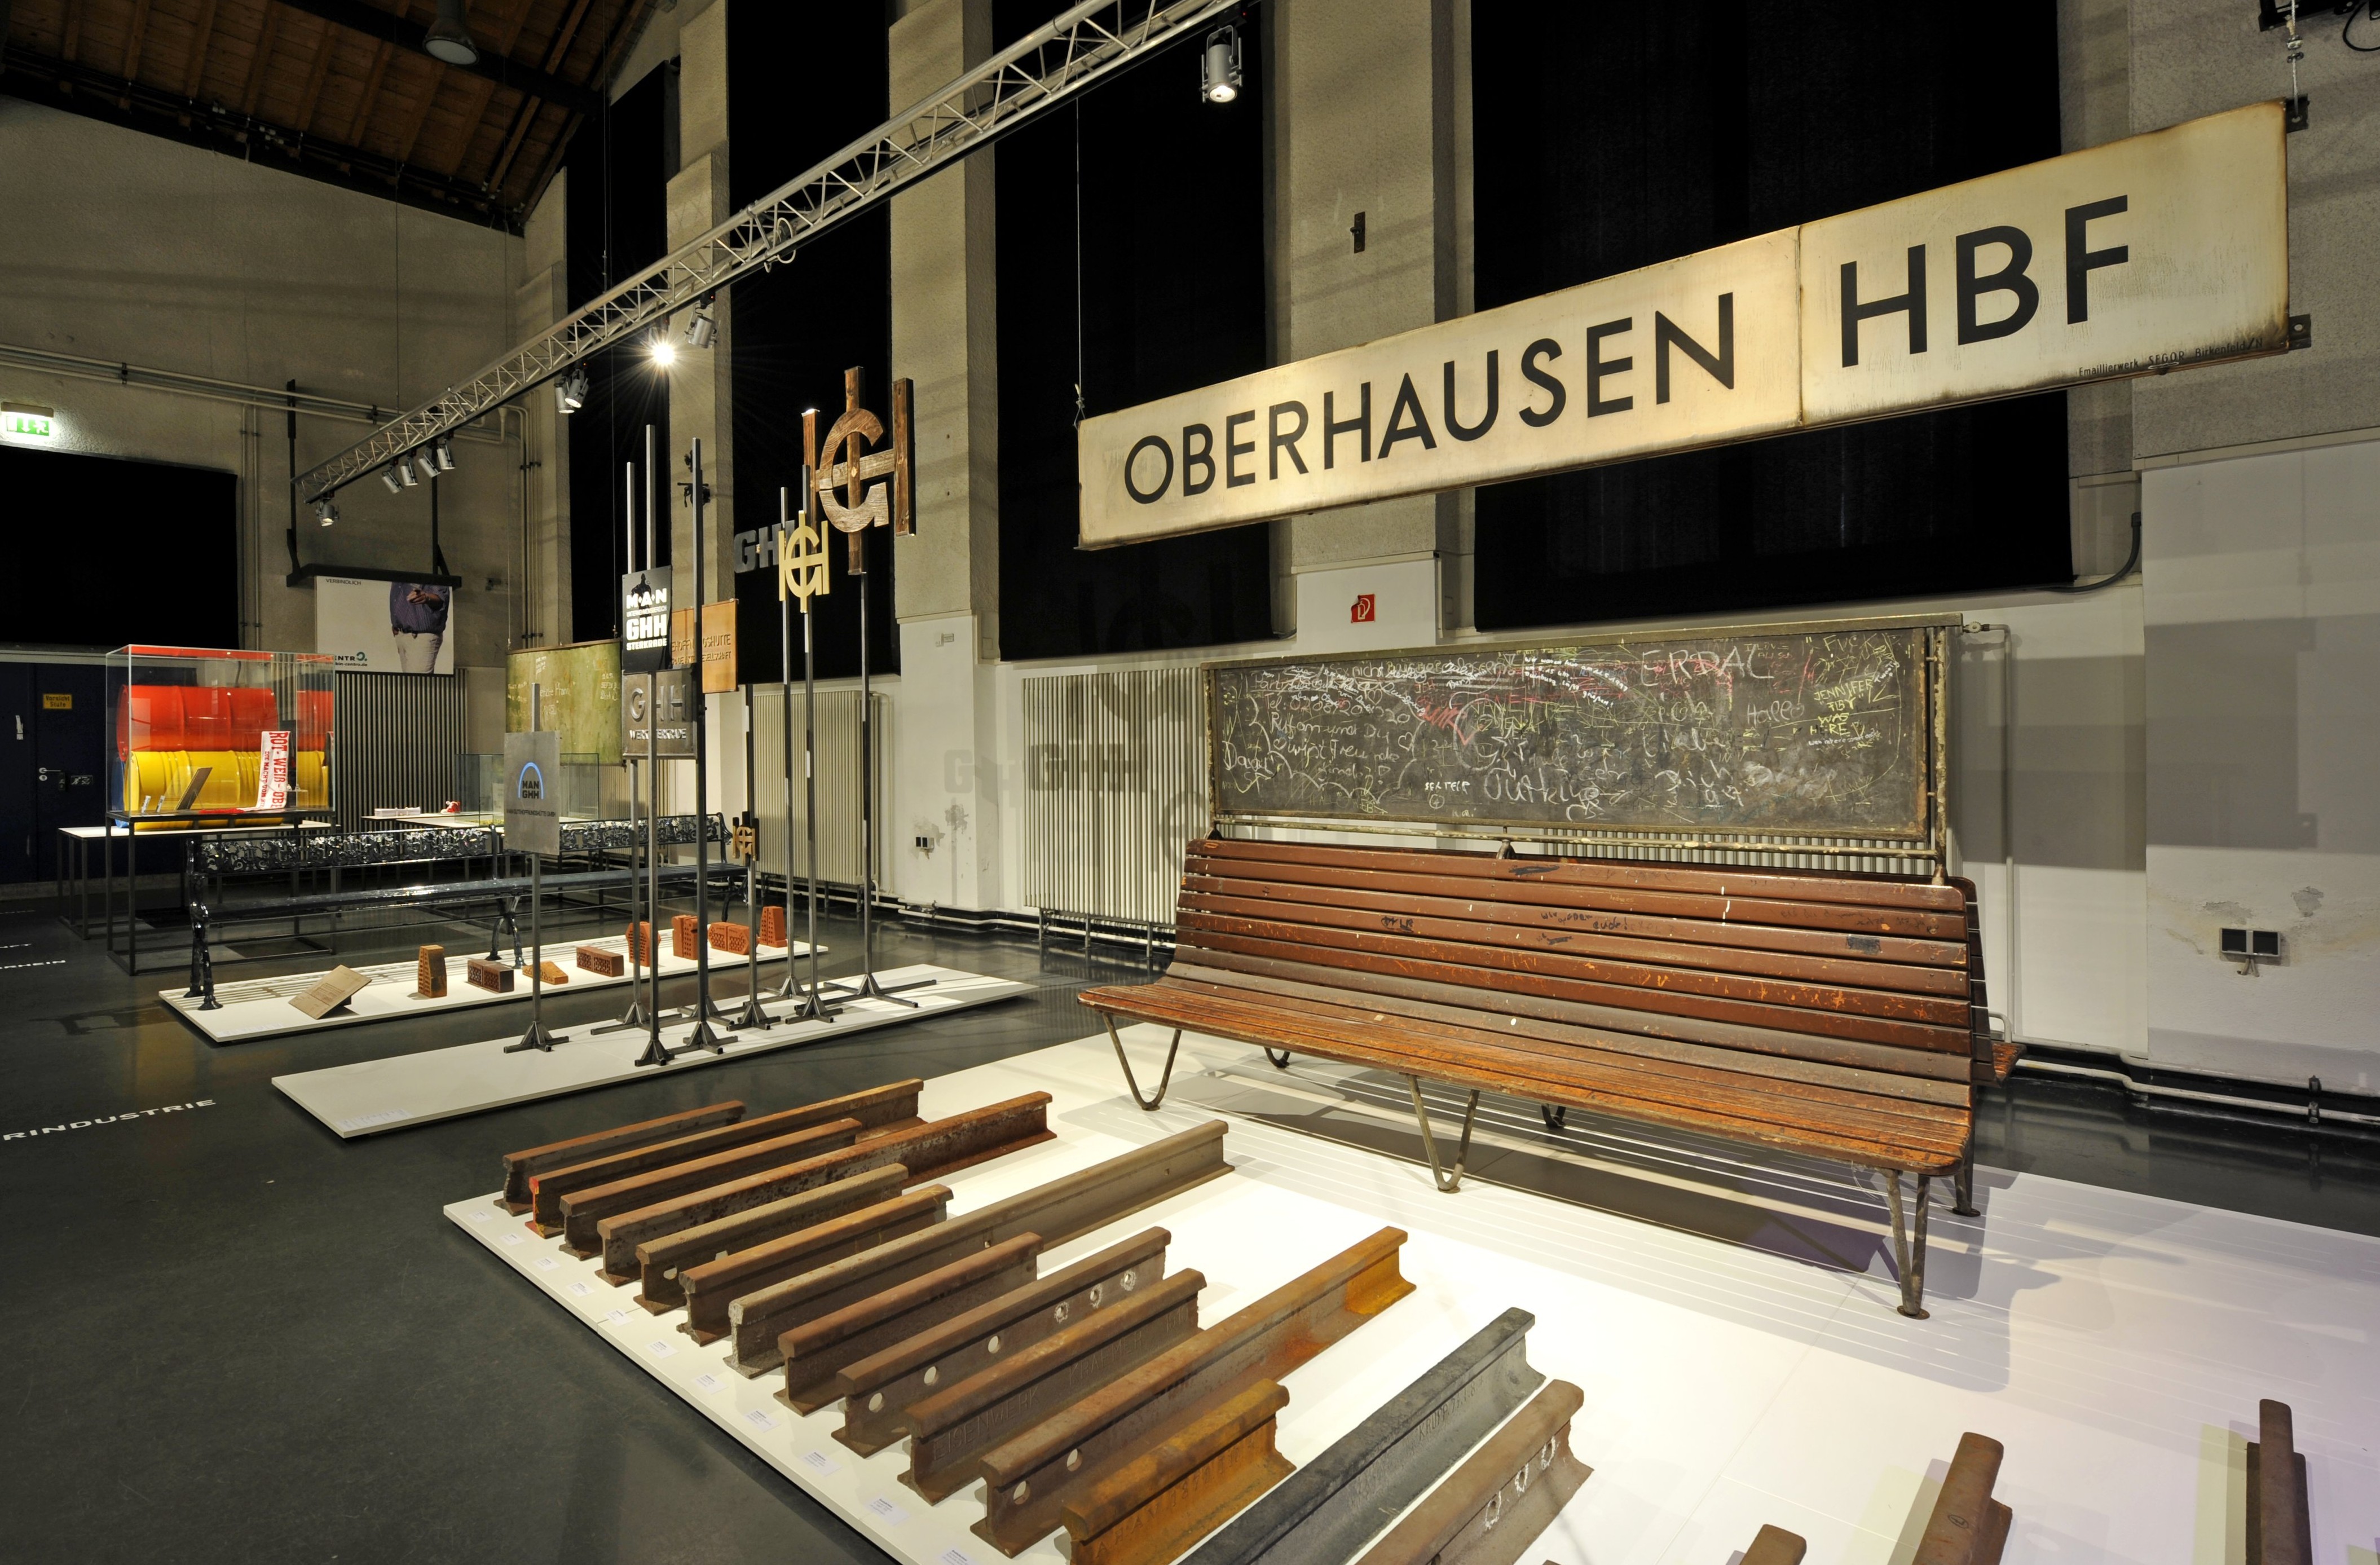 Rundgang durch die Ausstellung "Stadt der Guten Hoffnung - Bilder aus Oberhausen"